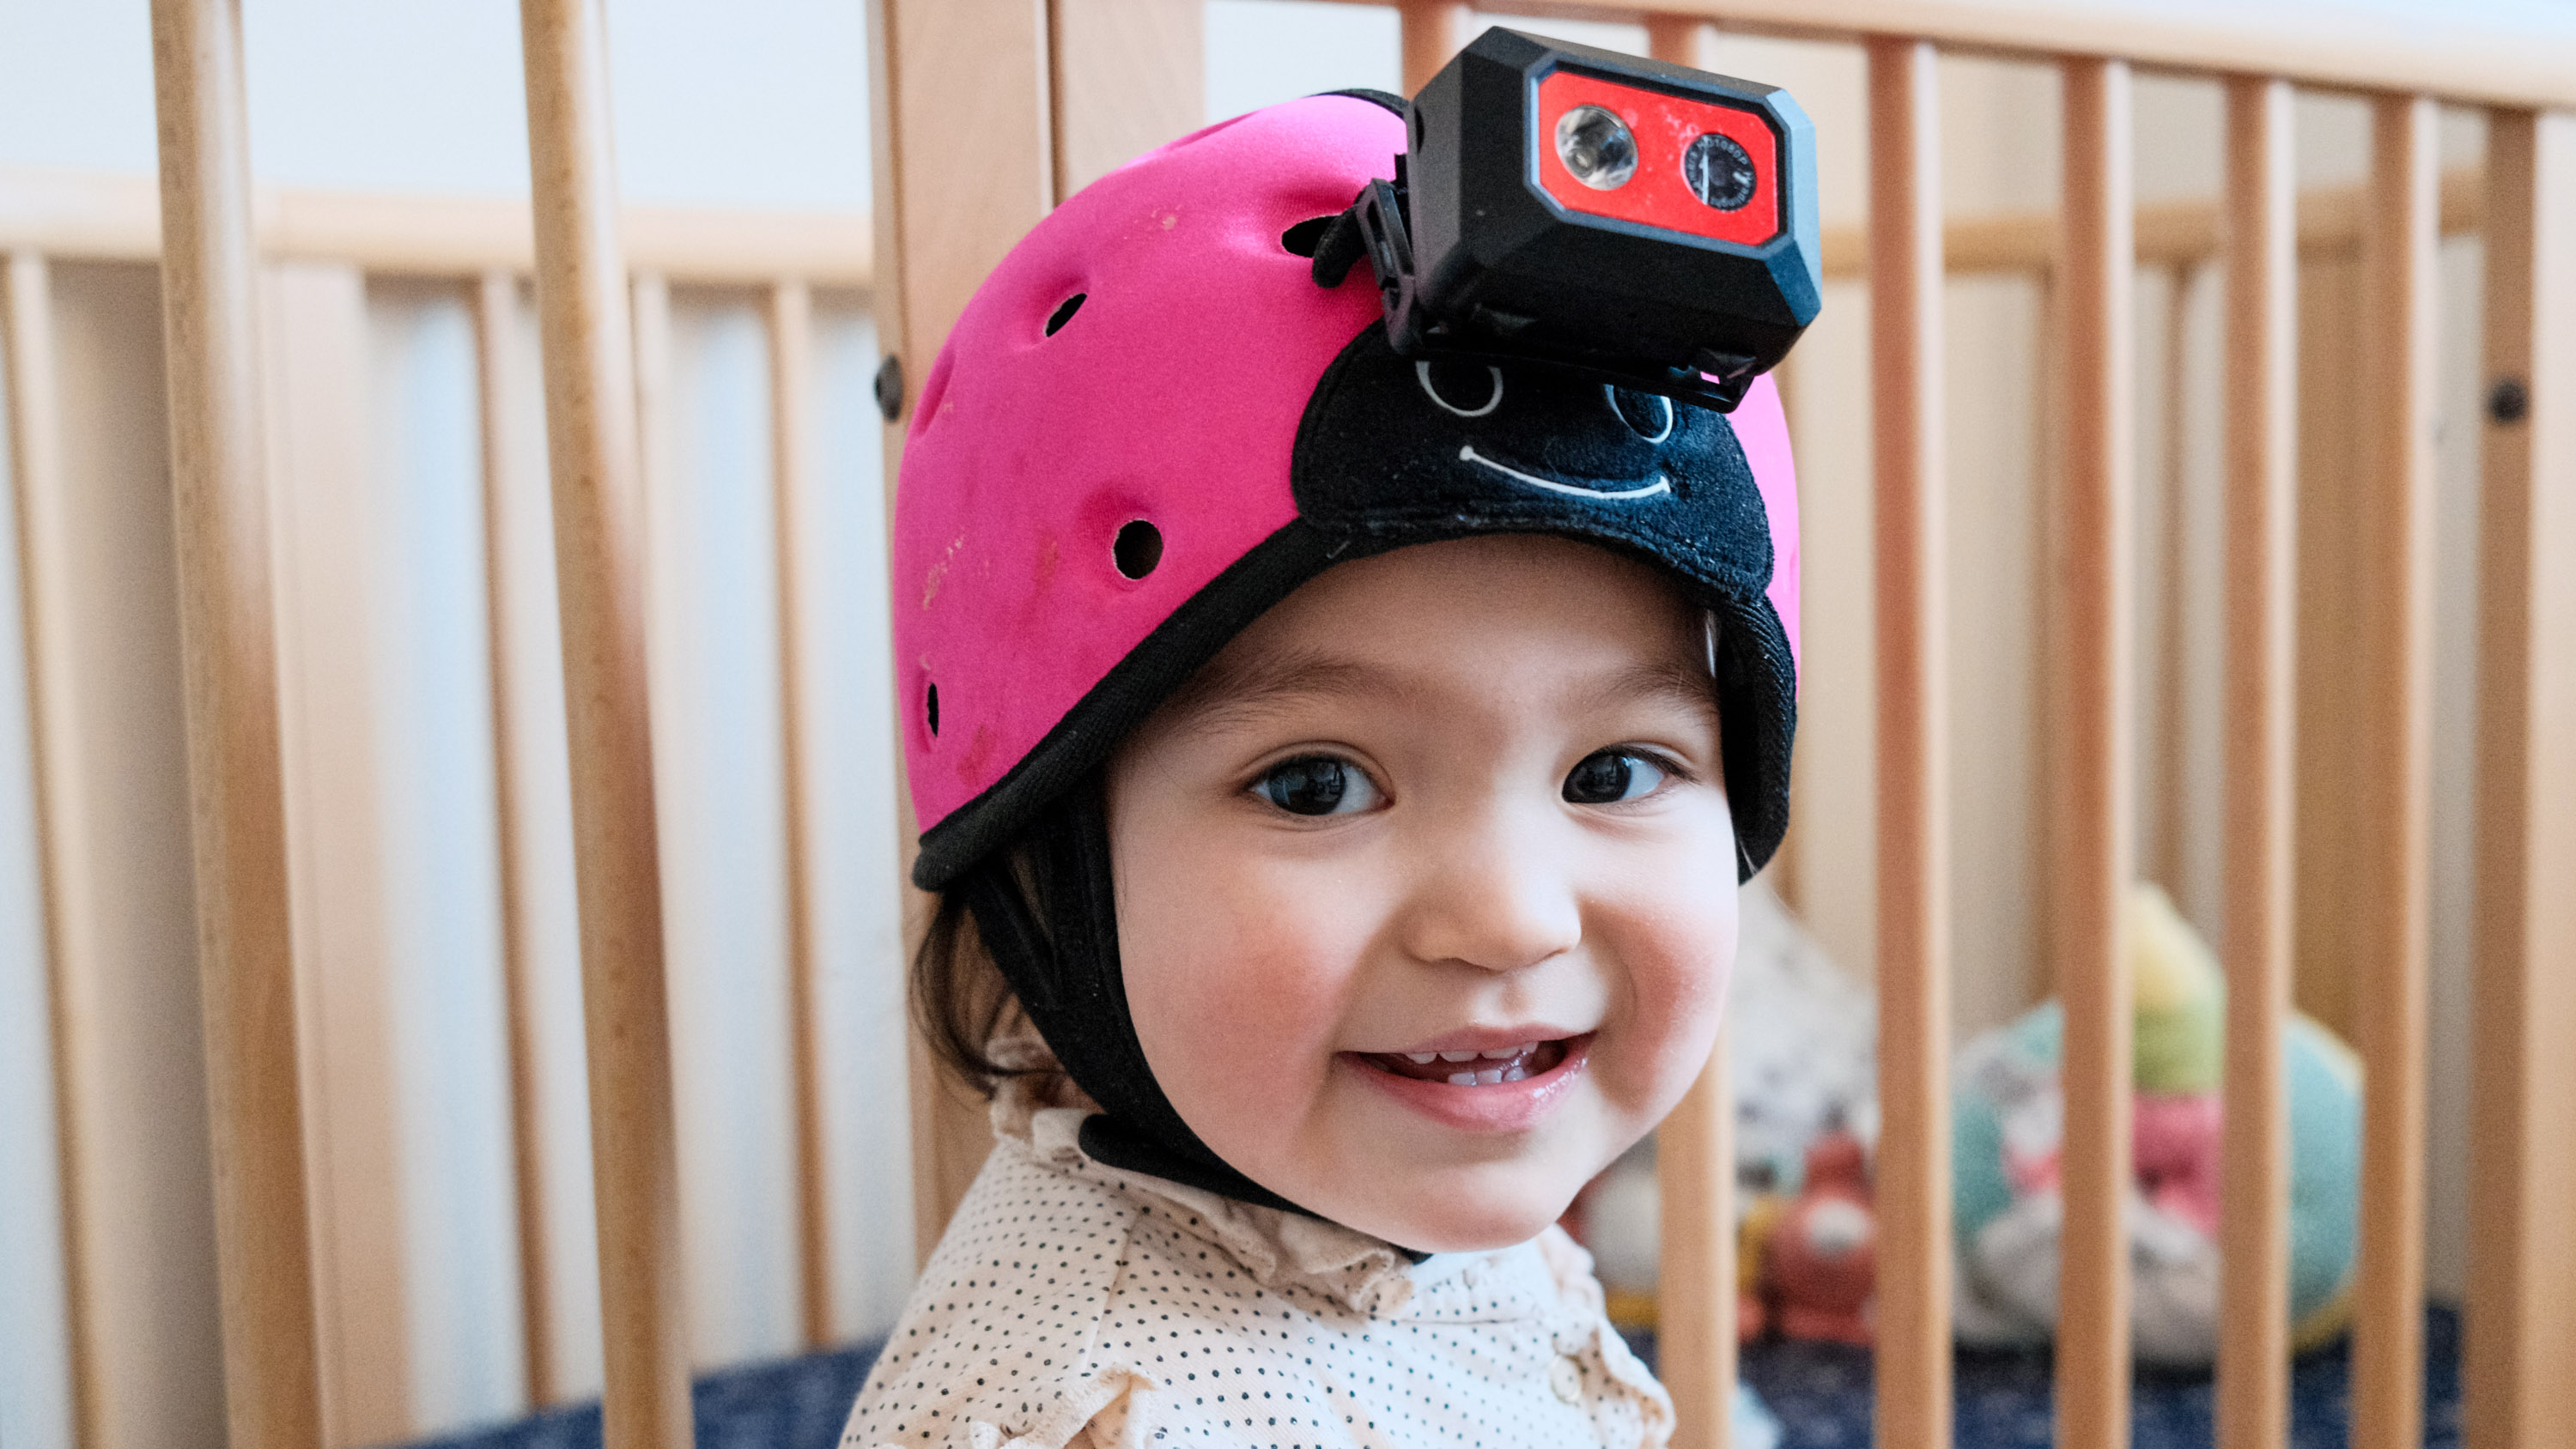 gros plan d'un bébé souriant portant un casque-caméra avec les barreaux d'un berceau en arrière-plan